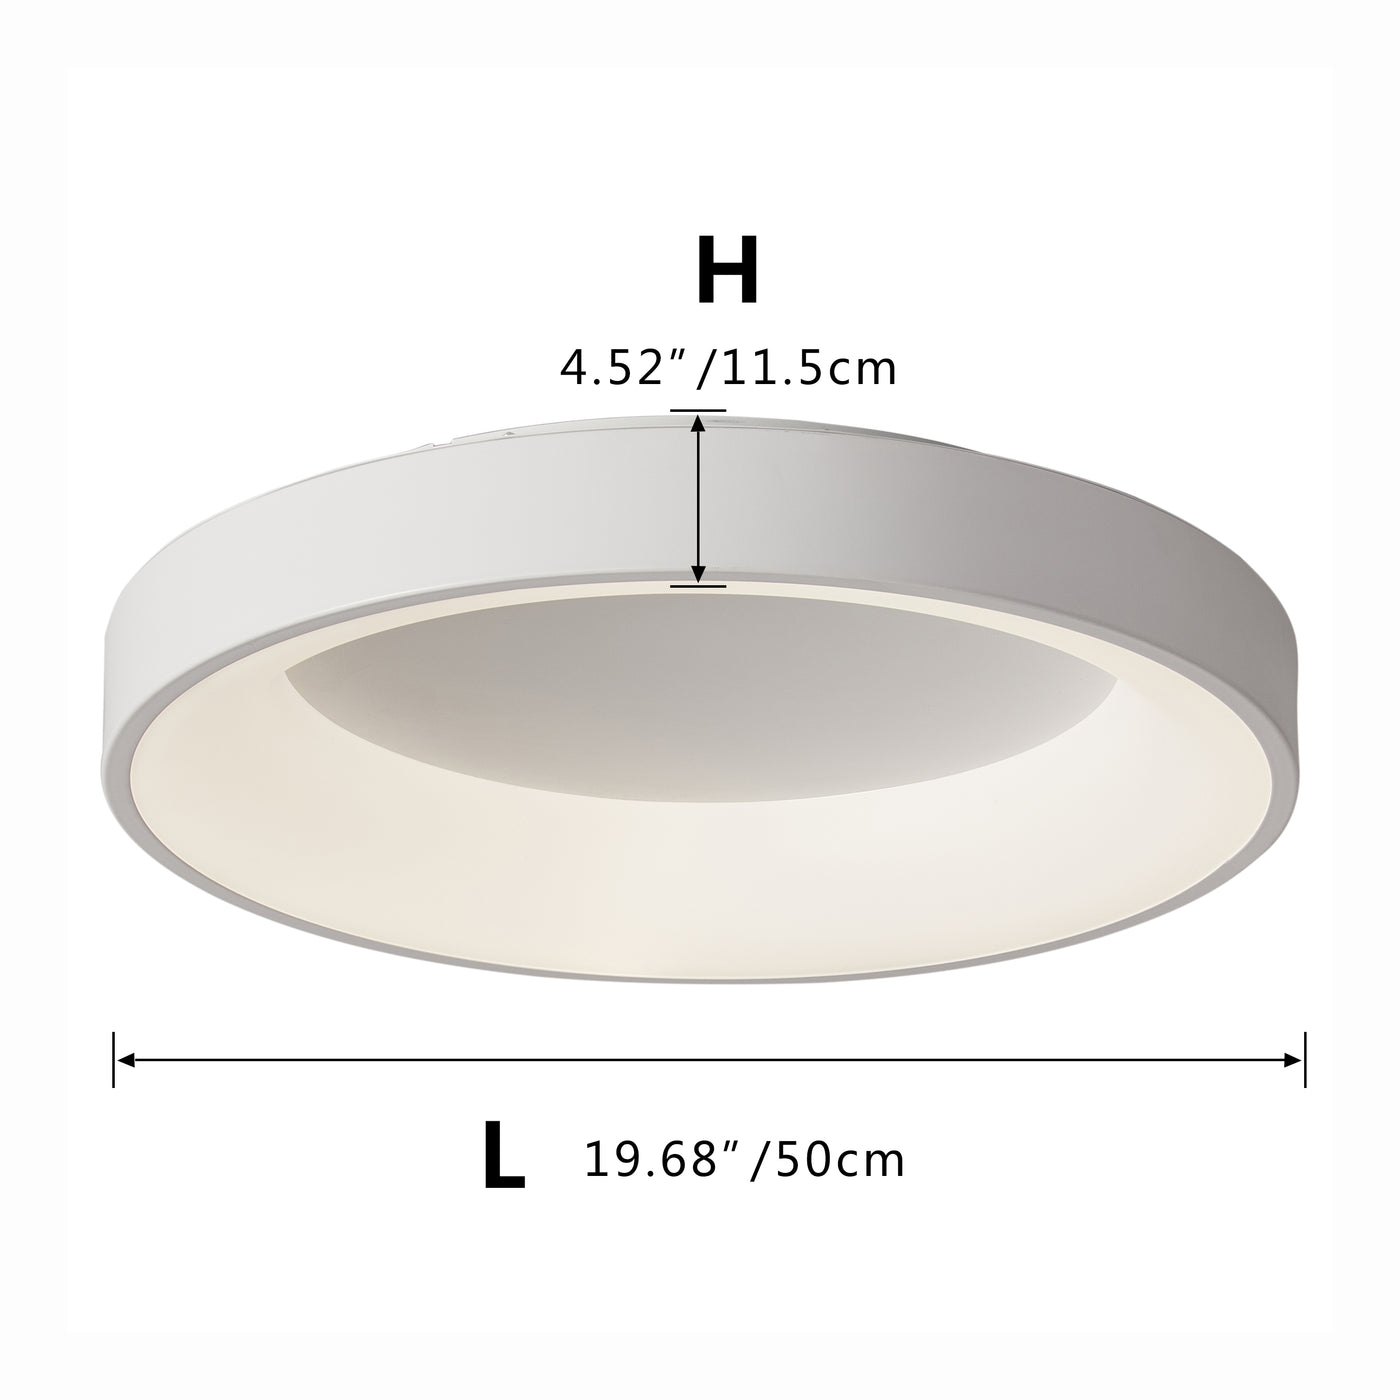 1-Light White Circular-Shaped LED Flush Mount Lighting